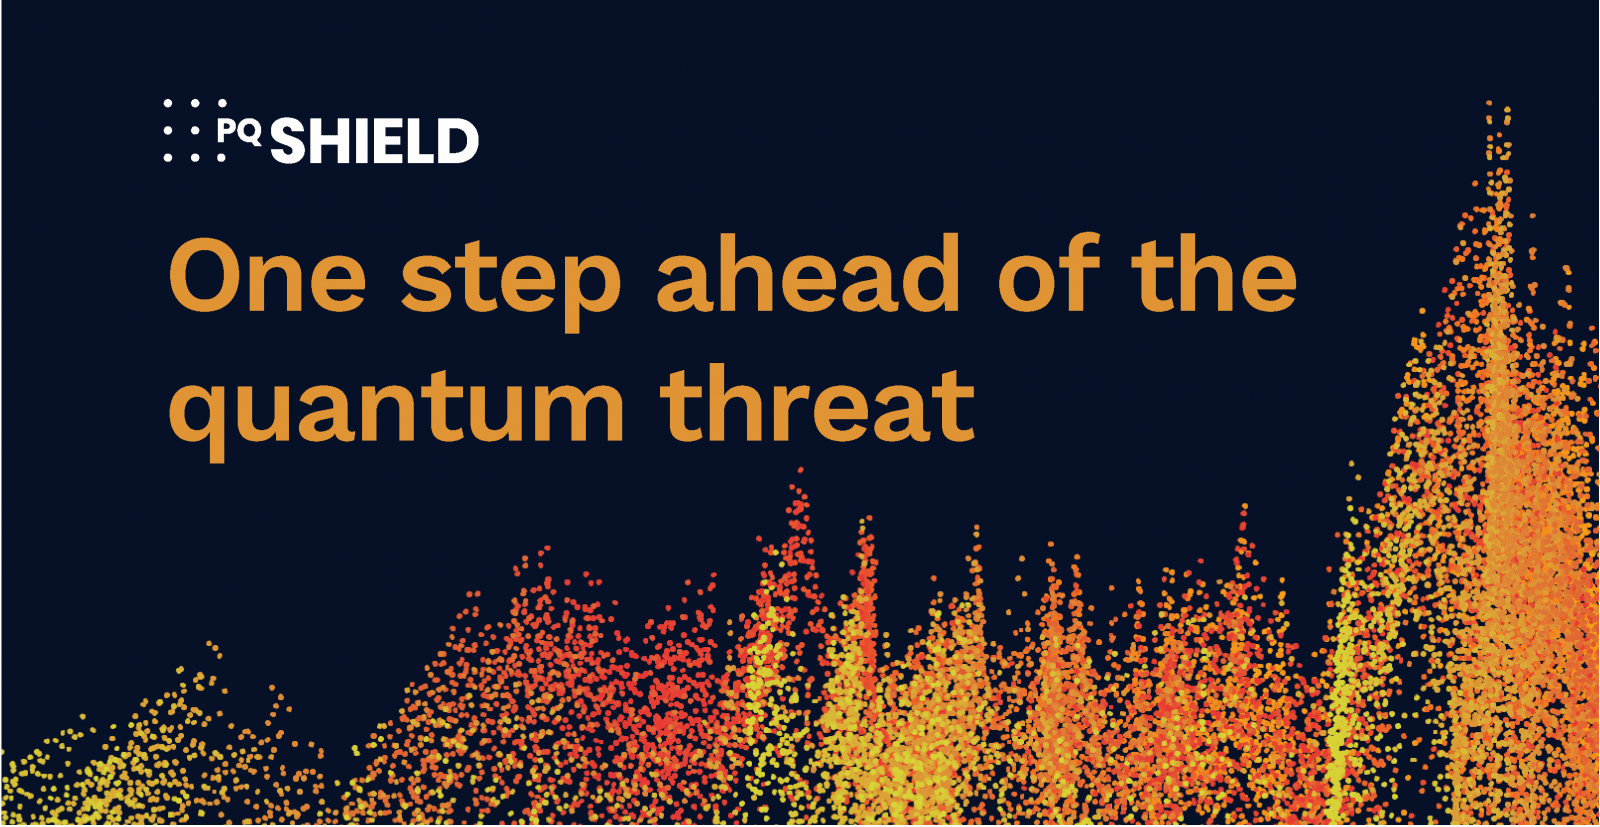 एक नए स्व-लिखित लेख में, PQShield साइबर सुरक्षा के लिए क्वांटम कंप्यूटिंग खतरों से बचने के लिए अपनी रणनीतियों पर चर्चा करता है।